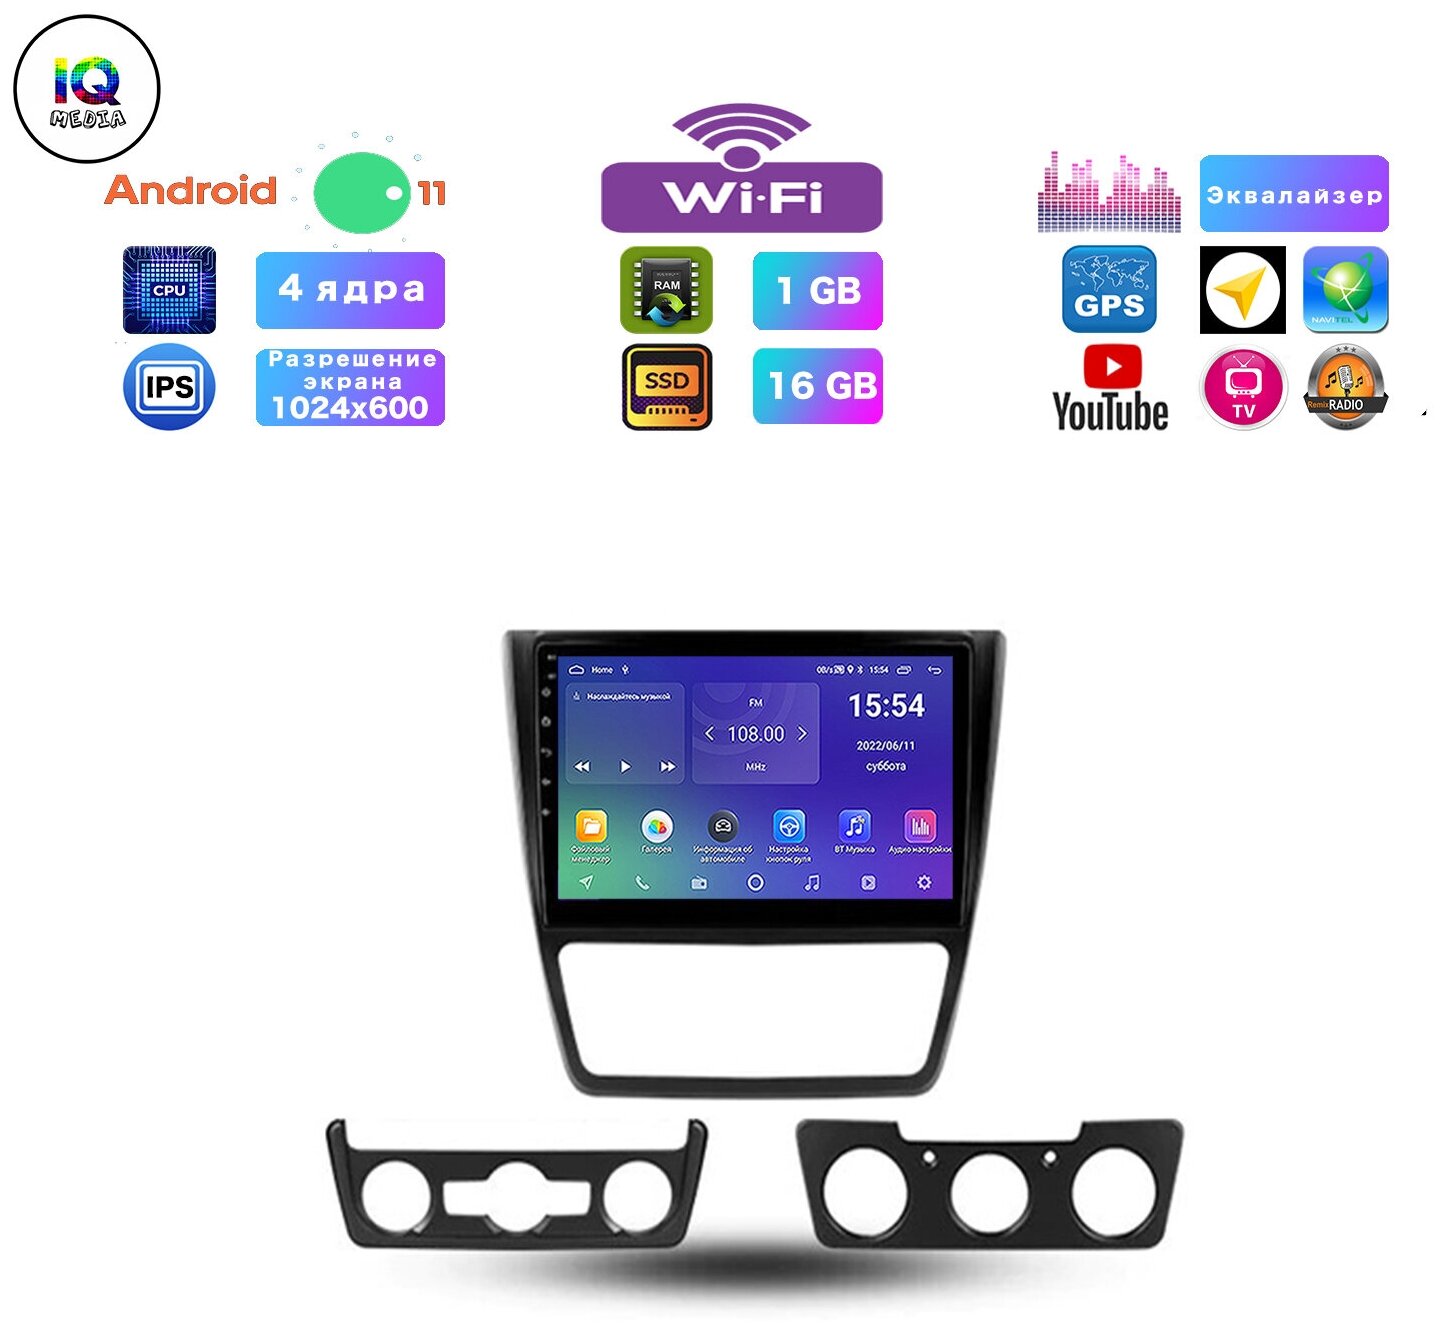 Автомагнитола для SKODA Yeti (2009-2017), Android 11, 2/32 Gb, Wi-Fi, Bluetooth, Hands Free, разделение экрана, поддержка кнопок на руле